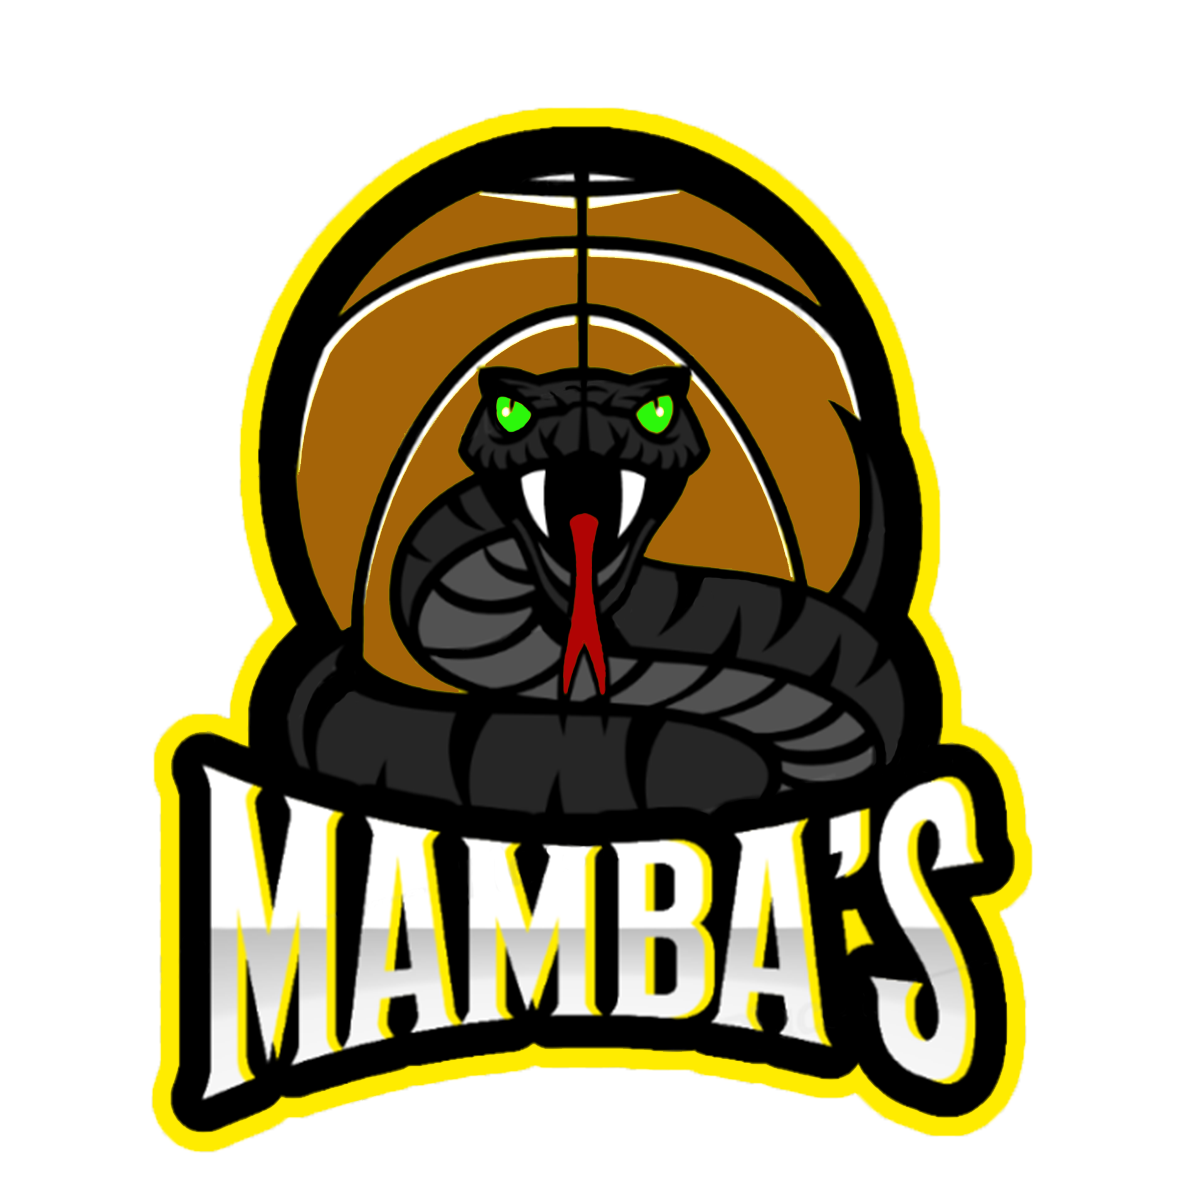 Mamba's